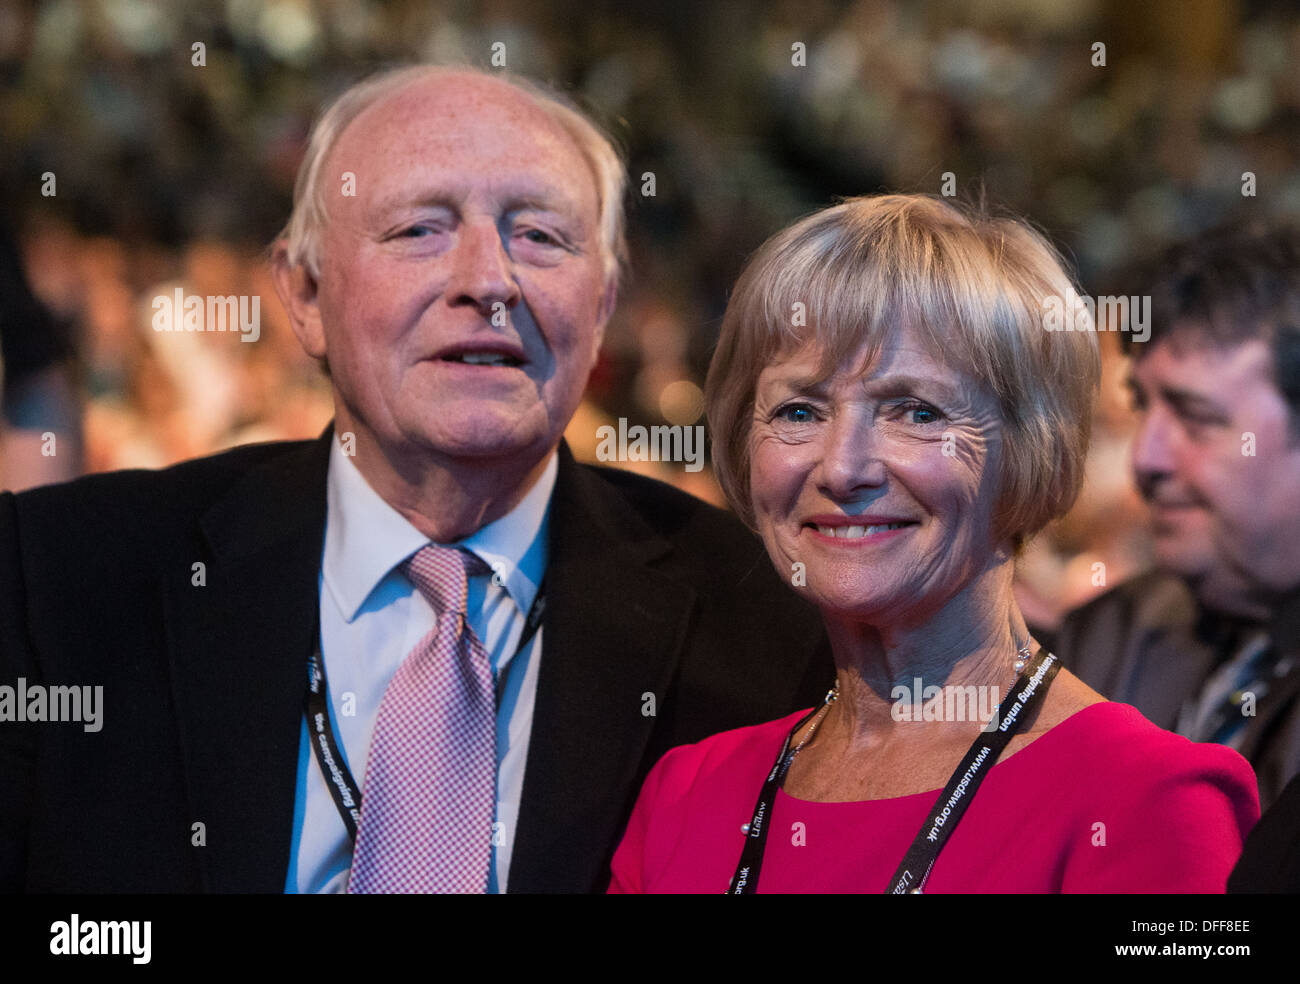 Neil e Glenys Kinnock a in occasione del congresso del partito laburista la Brighton 2013 Foto Stock